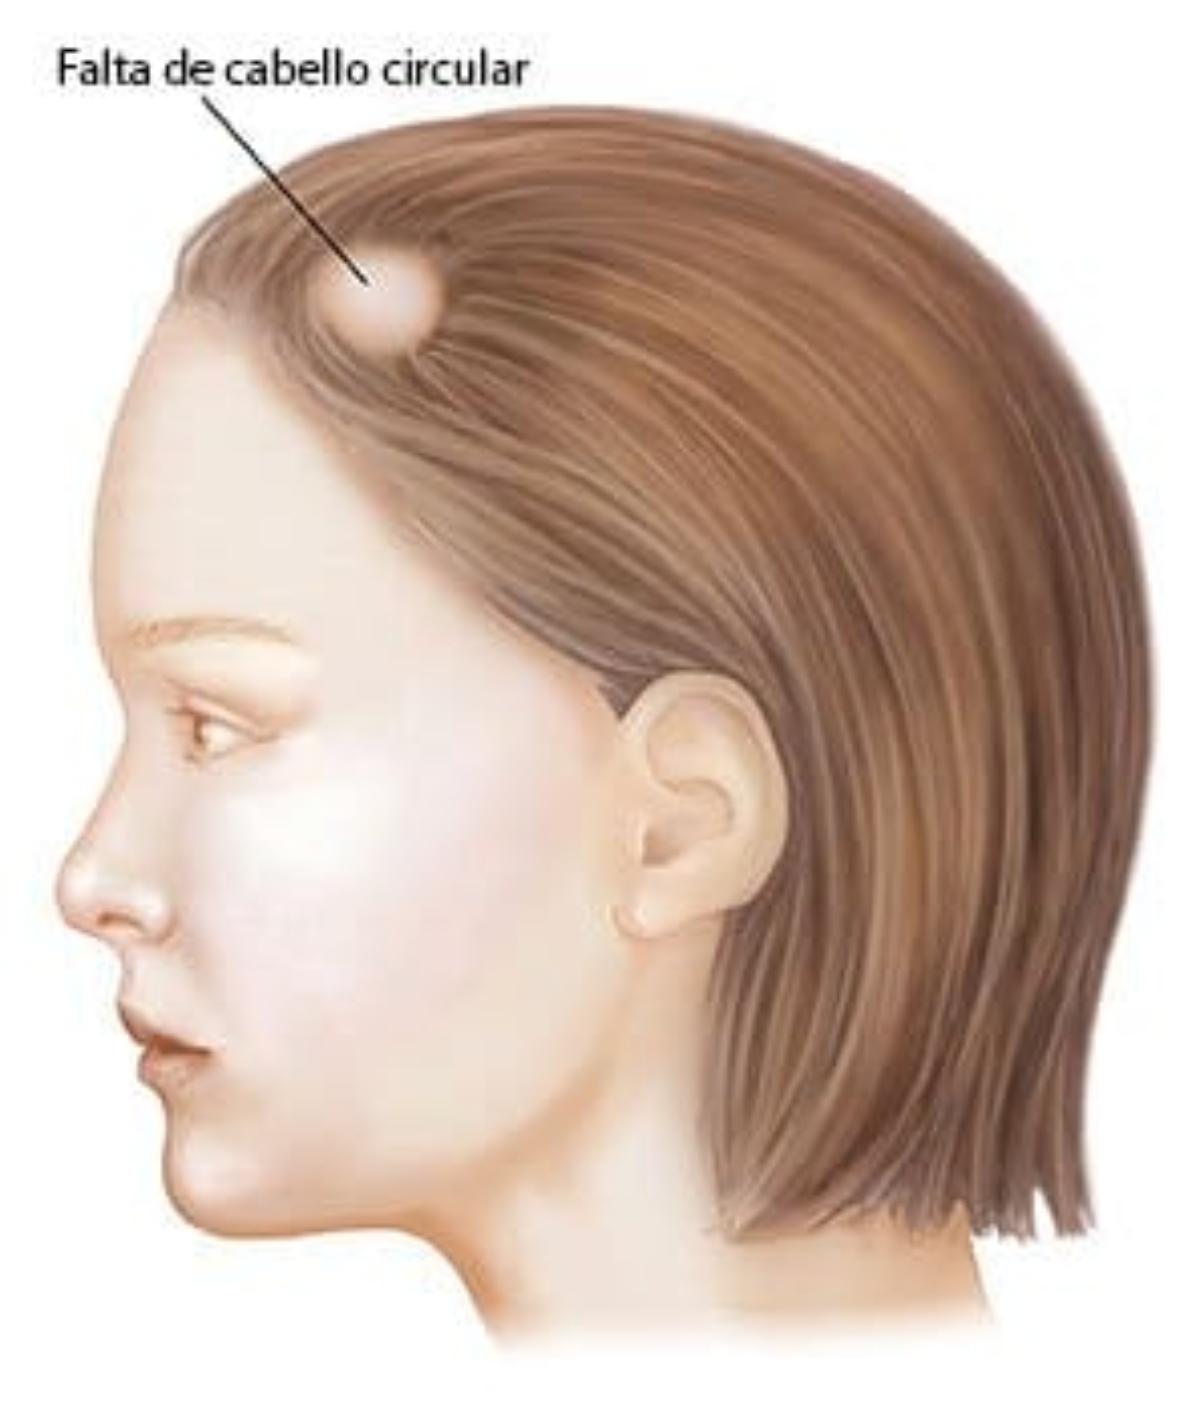 Desarrollar observación patrulla Alopecia Areata: Causas, tratamiento y mujeres - Face Clinic